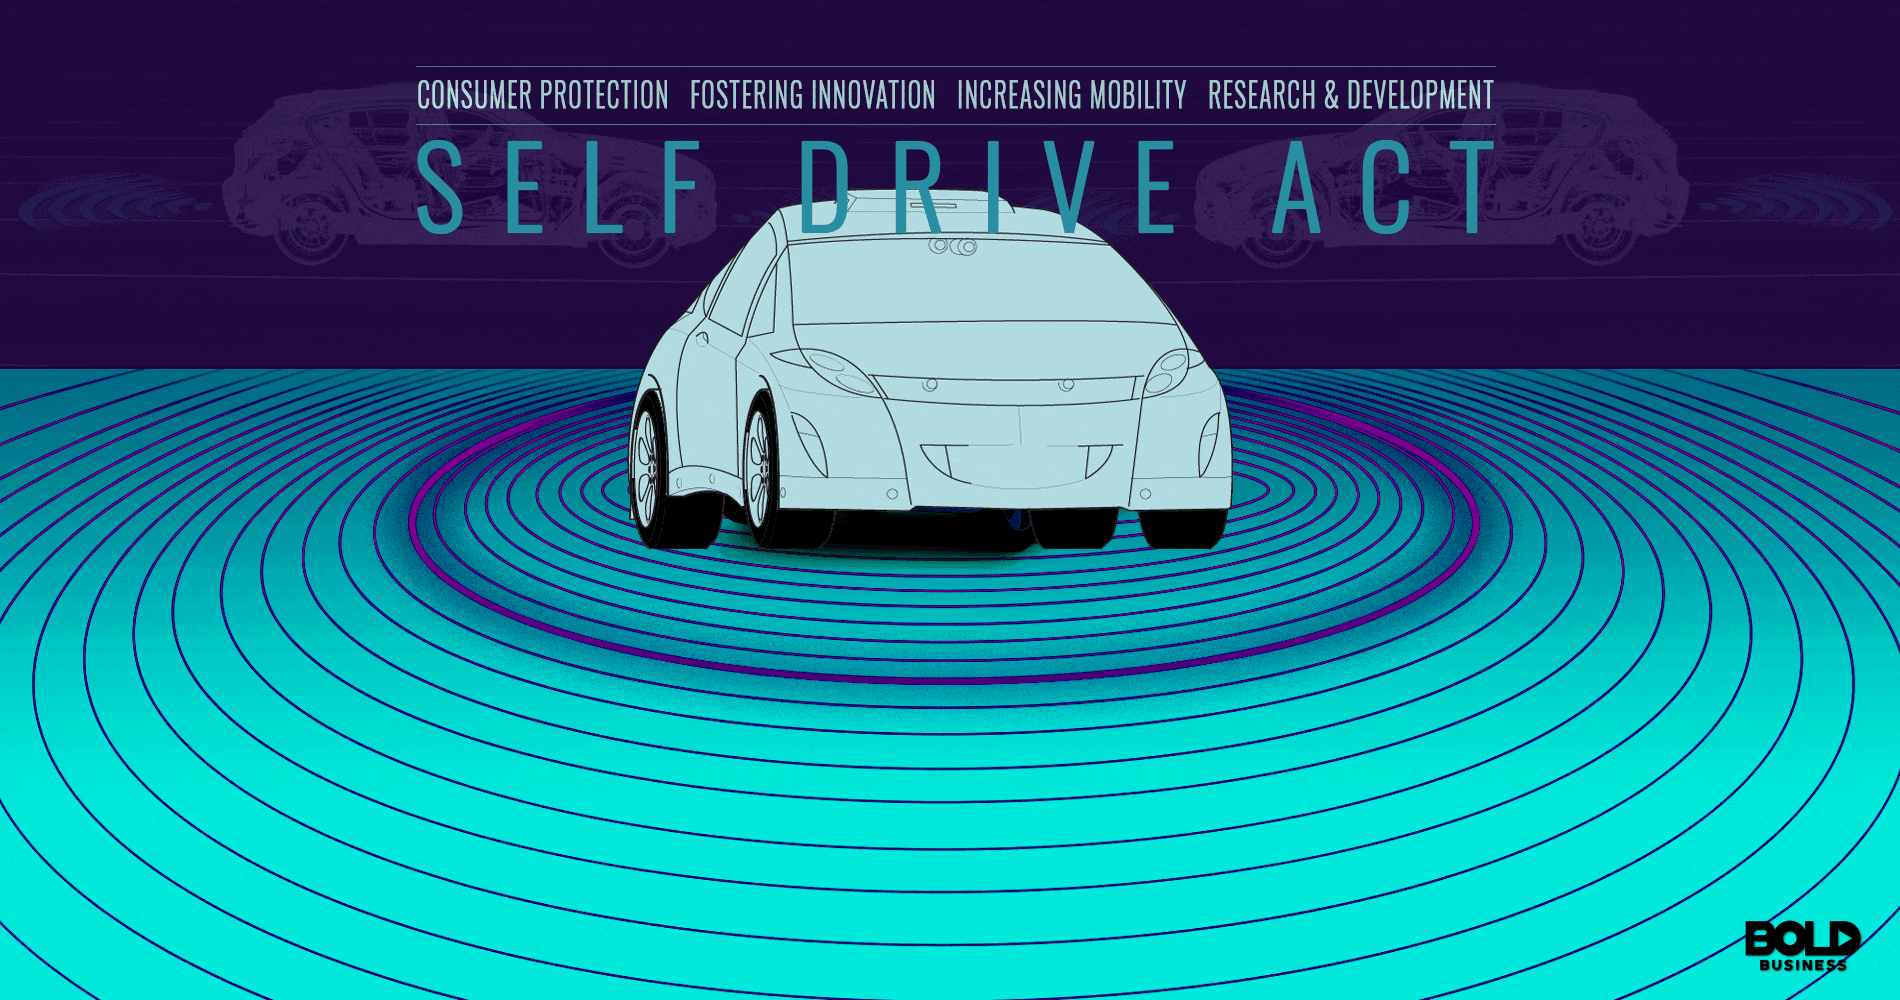 Self Drive Act